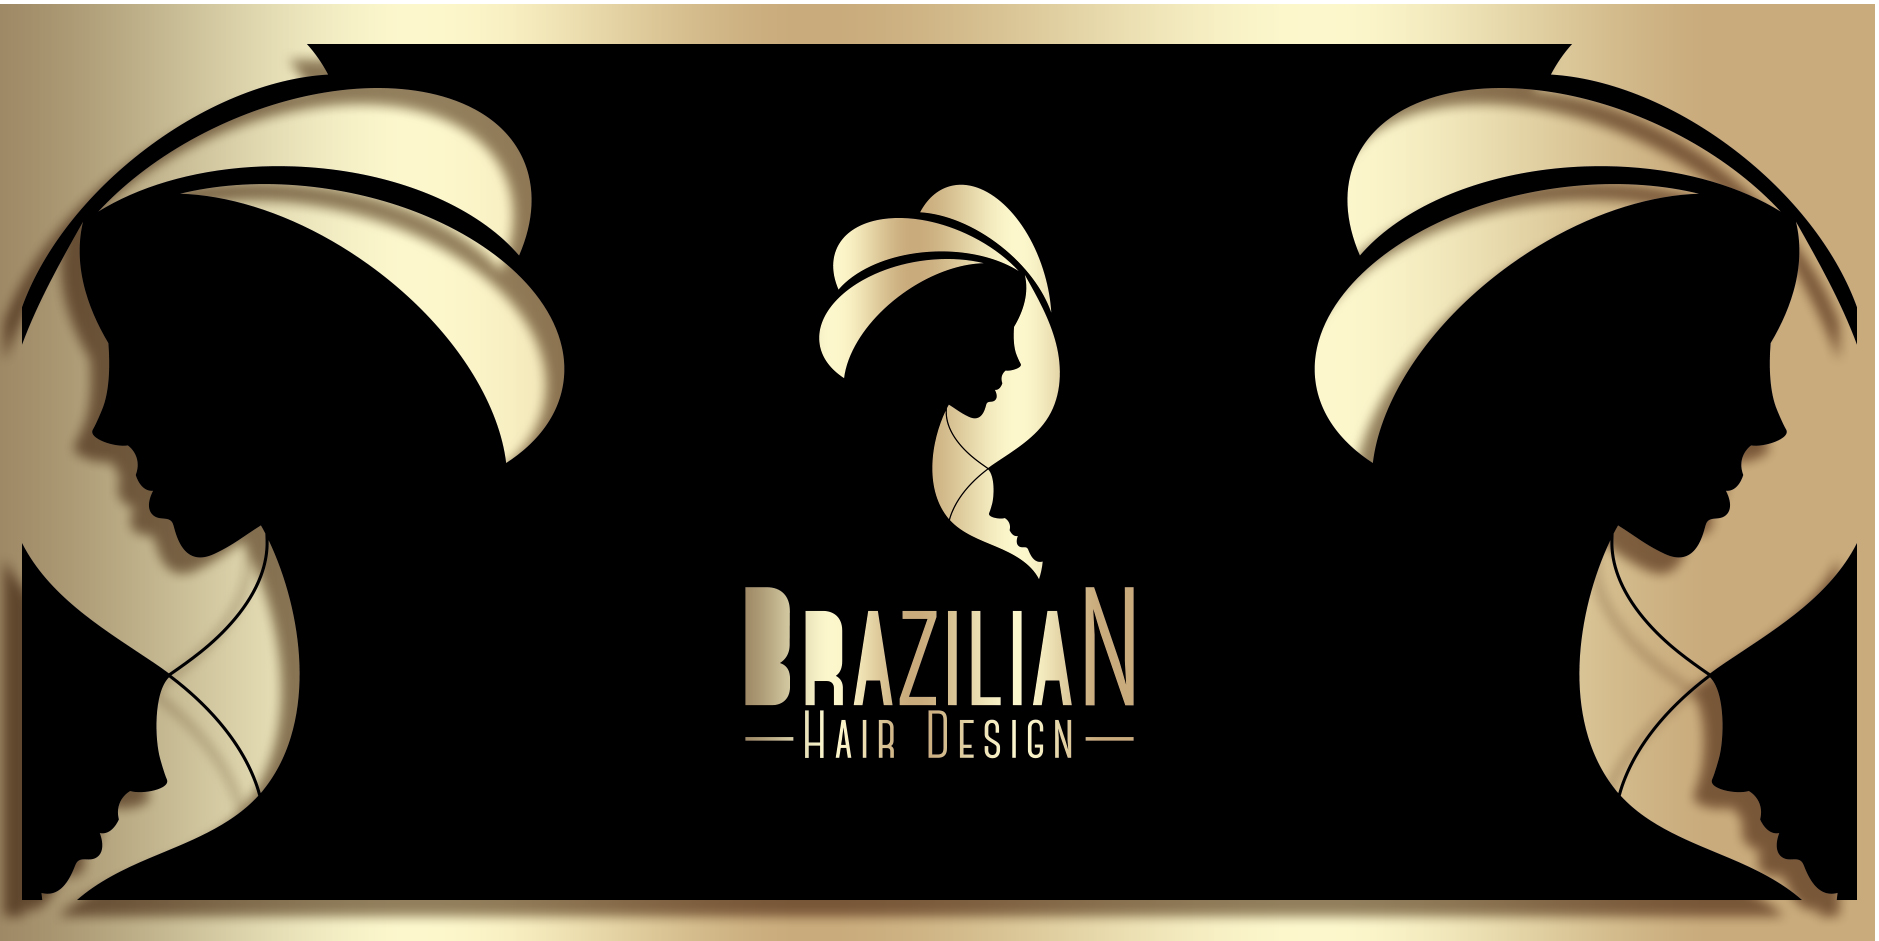 Brazilian Hair Design